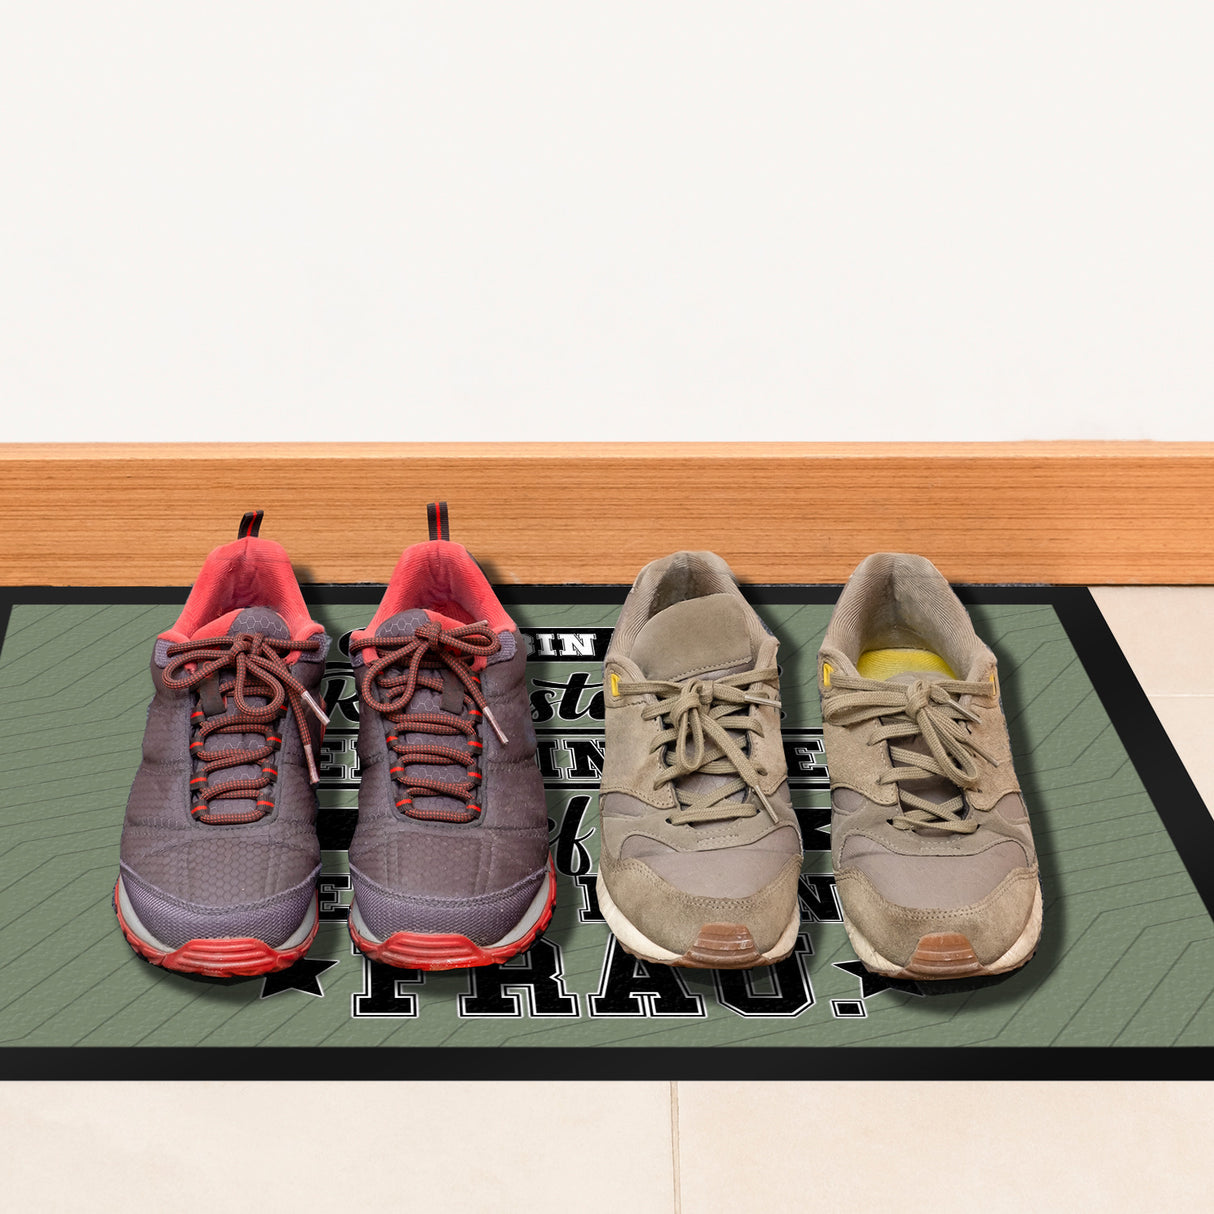 Rente Fußmatte in 35x50 cm ein dekorativer Fußabtreter für deine Wohnungstür